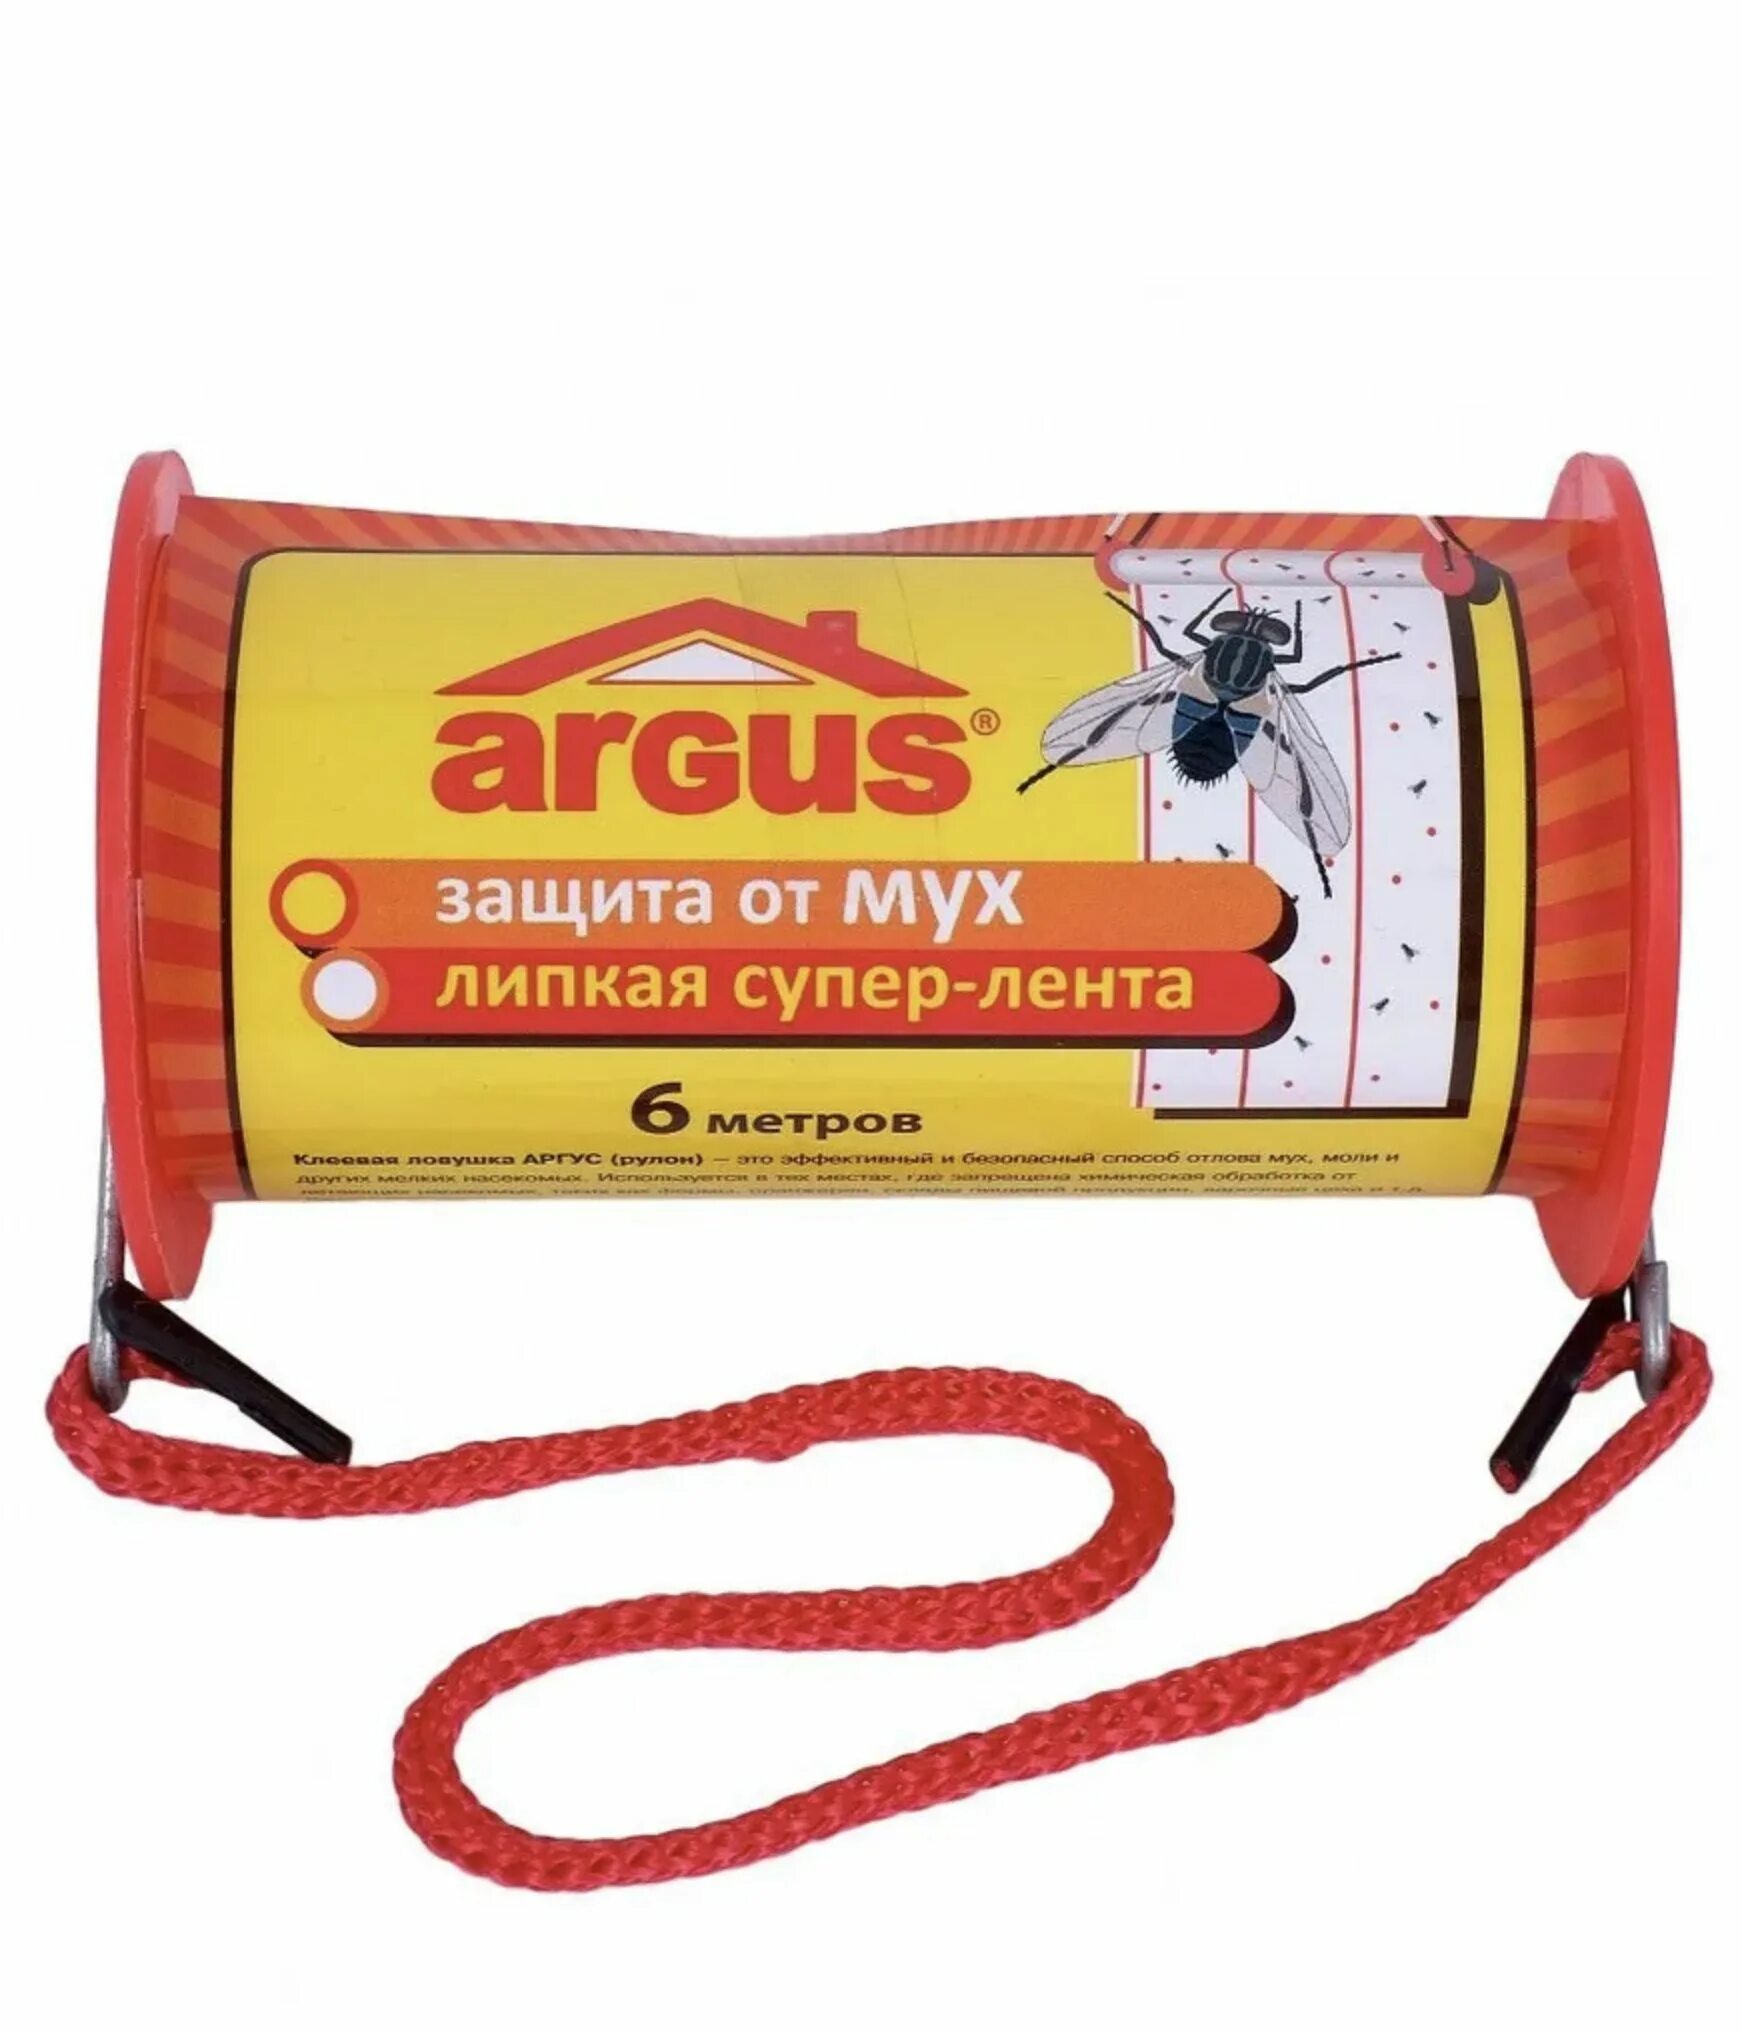 ЛОВУШКА клеевая для мух "Argus", 600 х 10 см. Липкая лента от мух Argus 1шт.. Клеевая ЛОВУШКА ролик 6м*10 см. Липучка для мух.